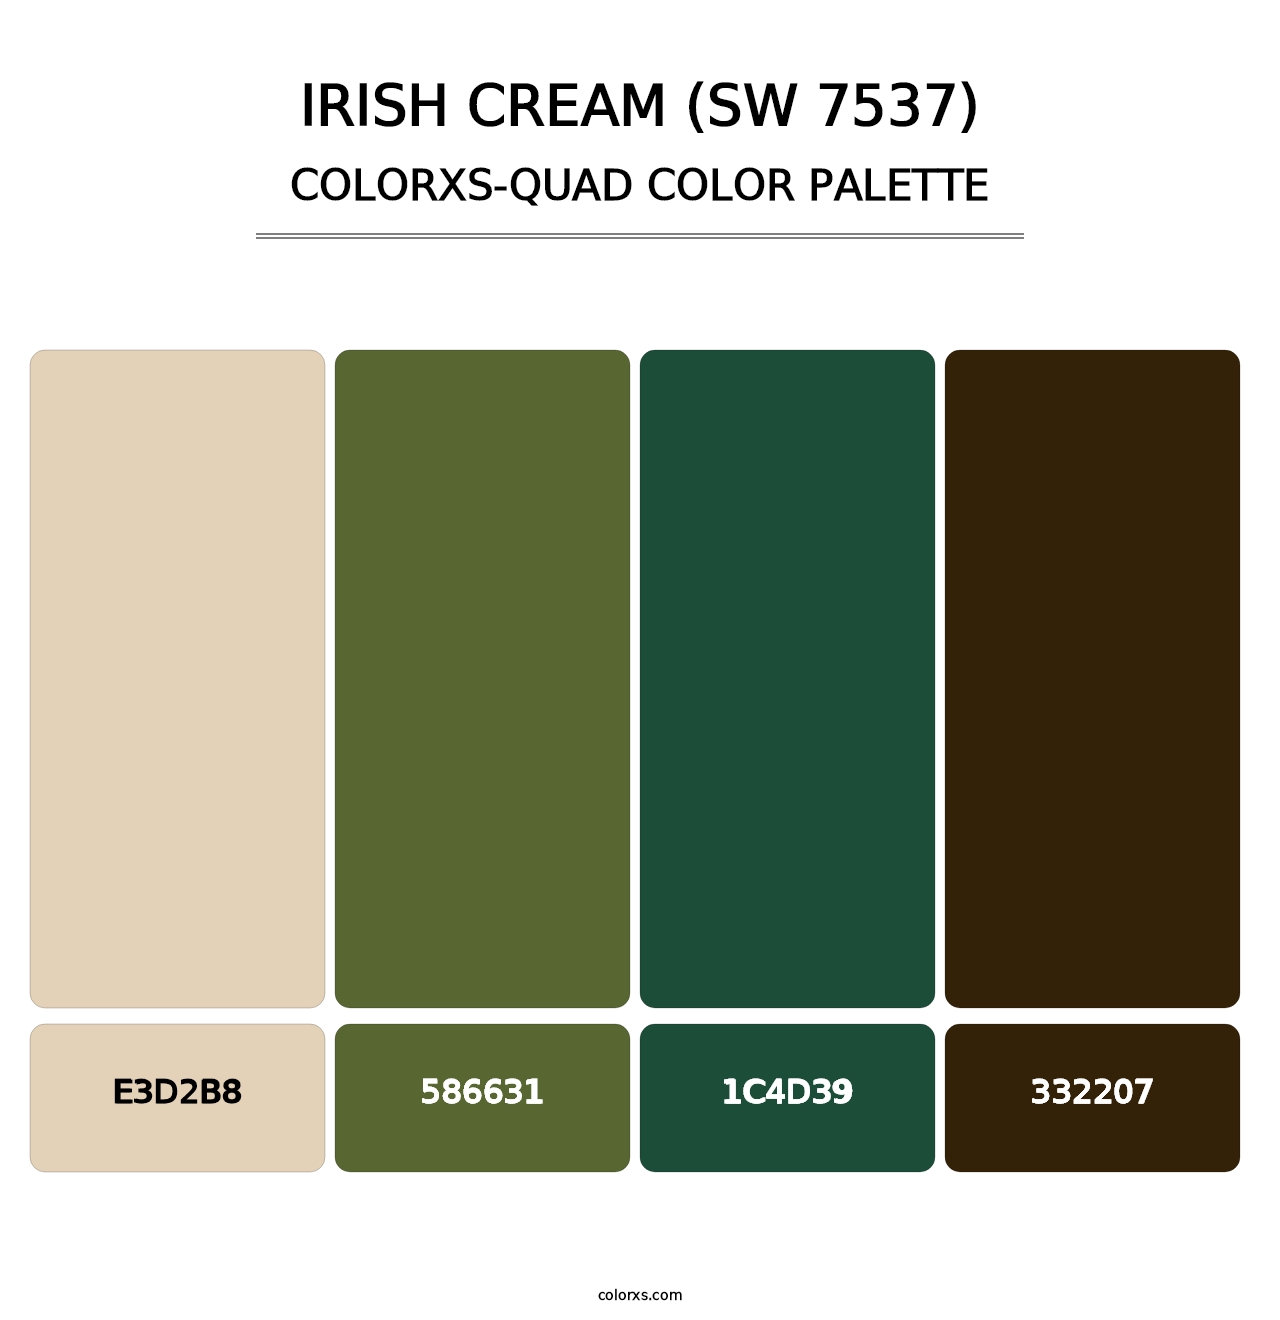 Irish Cream (SW 7537) - Colorxs Quad Palette